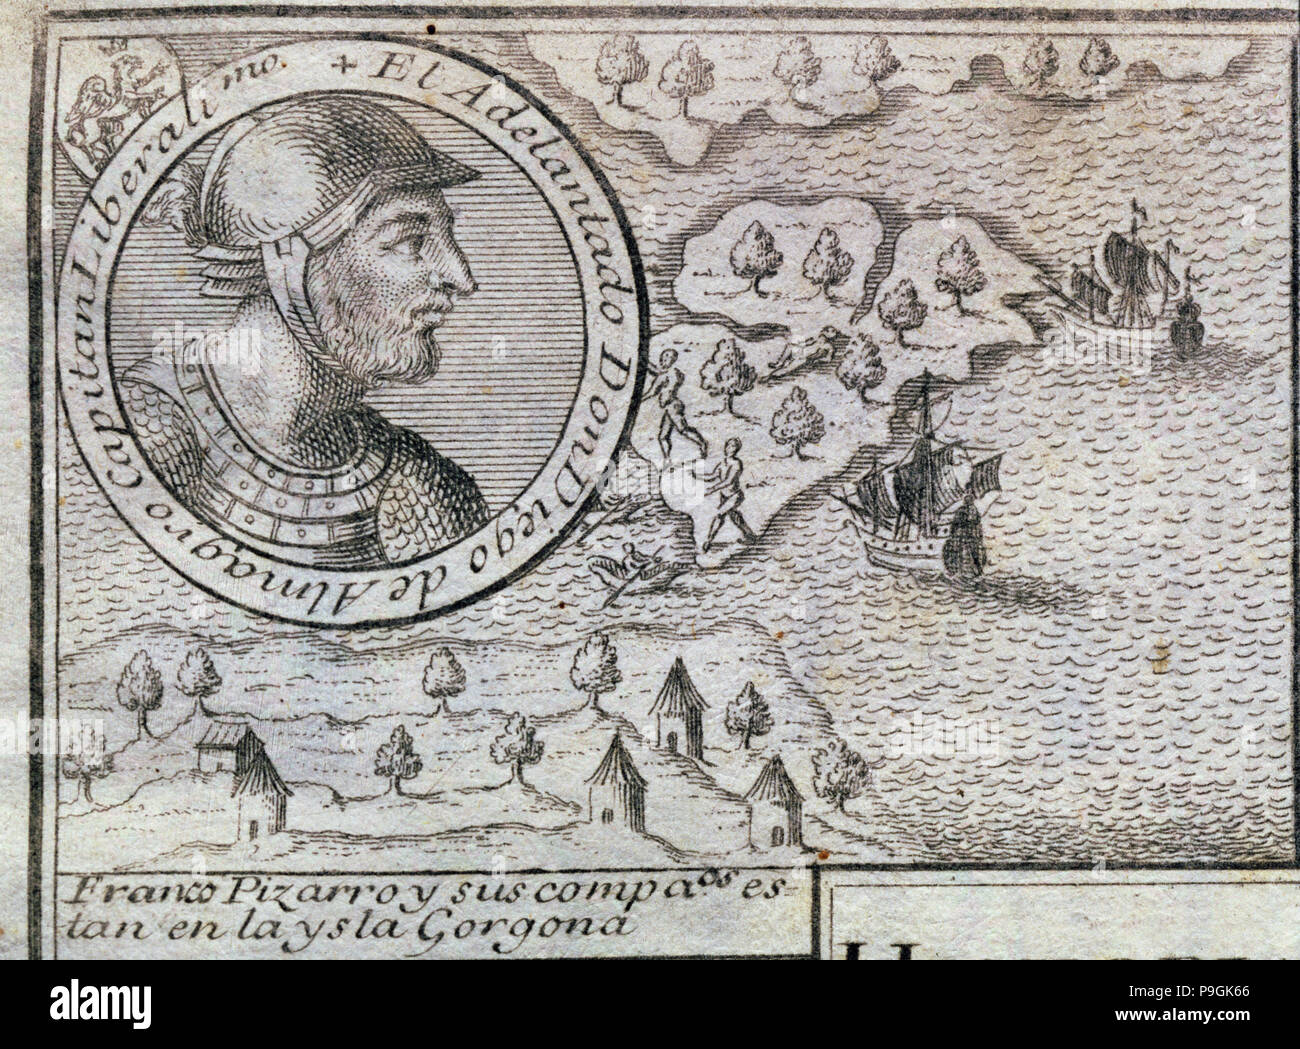 "Francisco Pizarro und seine Begleiter sind auf der Insel Gorgona", Kupferstich von 1726, mit der… Stockfoto